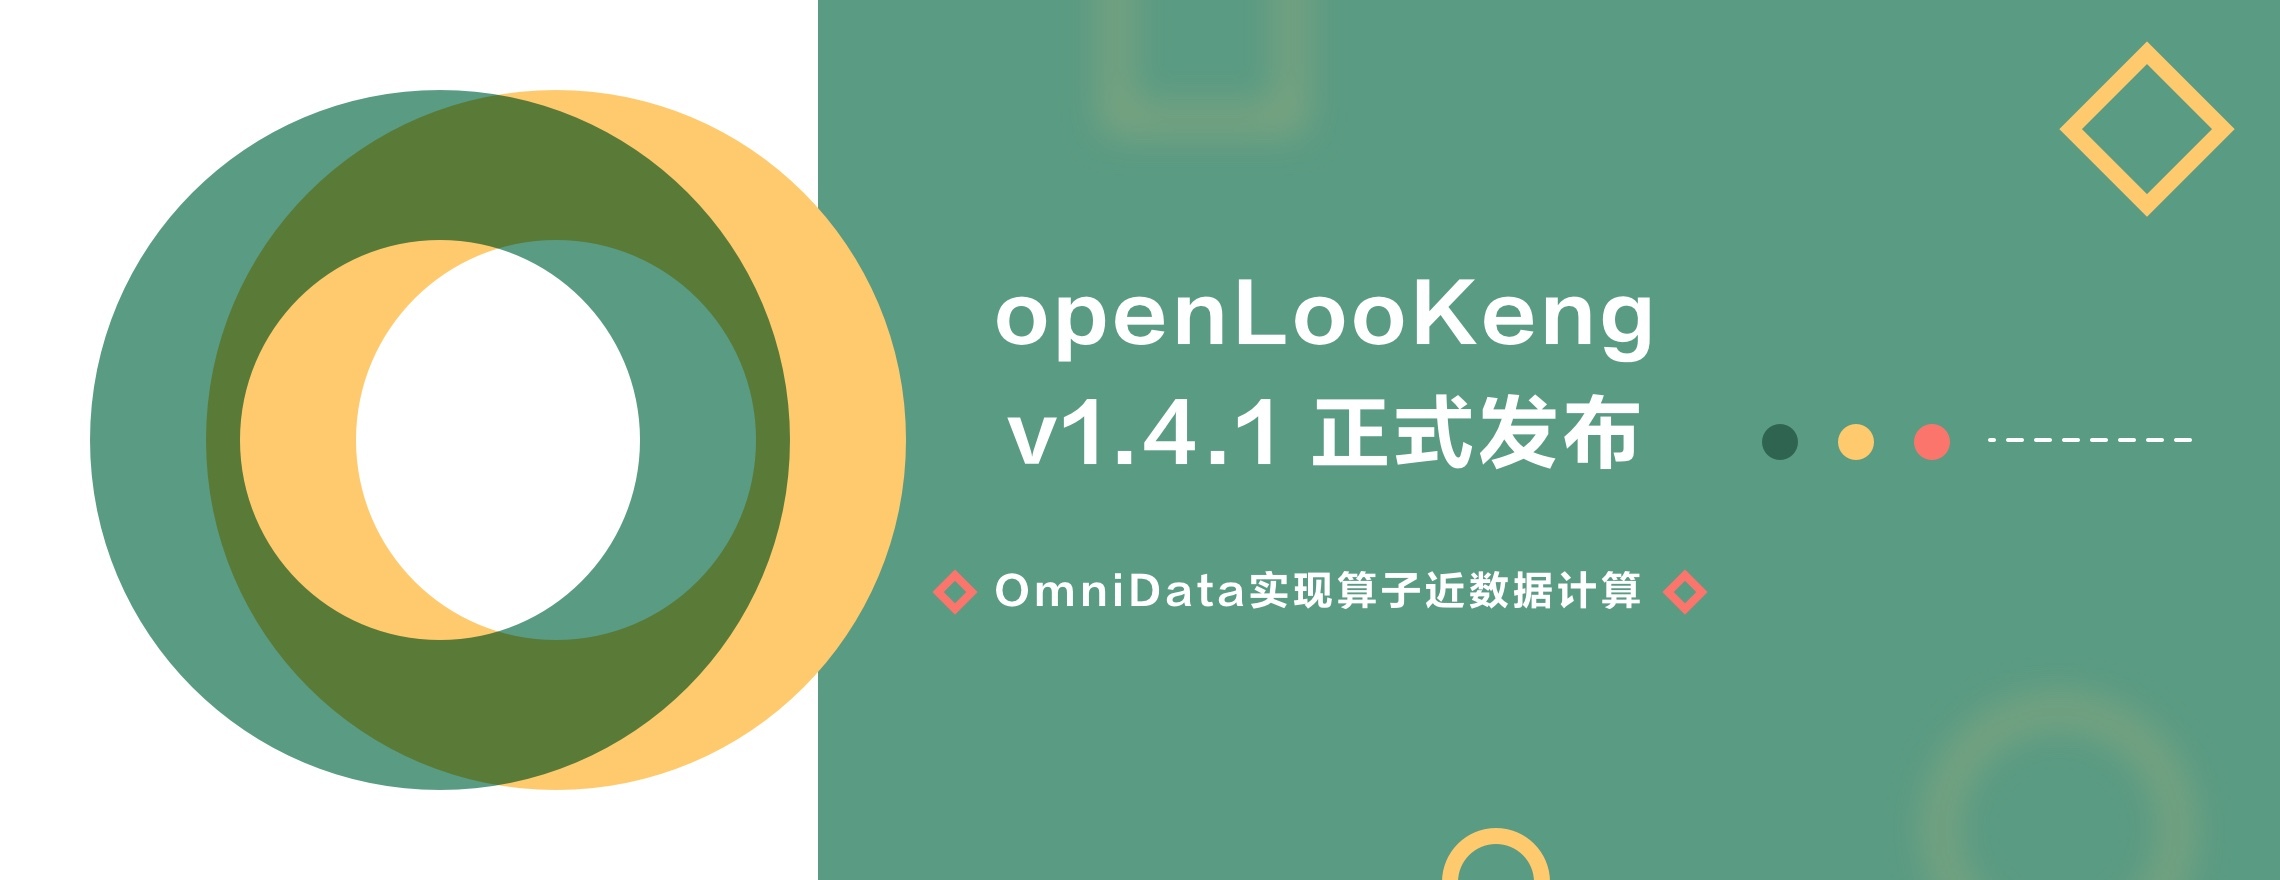 openLooKeng v1.4.1 上线，OmniData Connector 来了